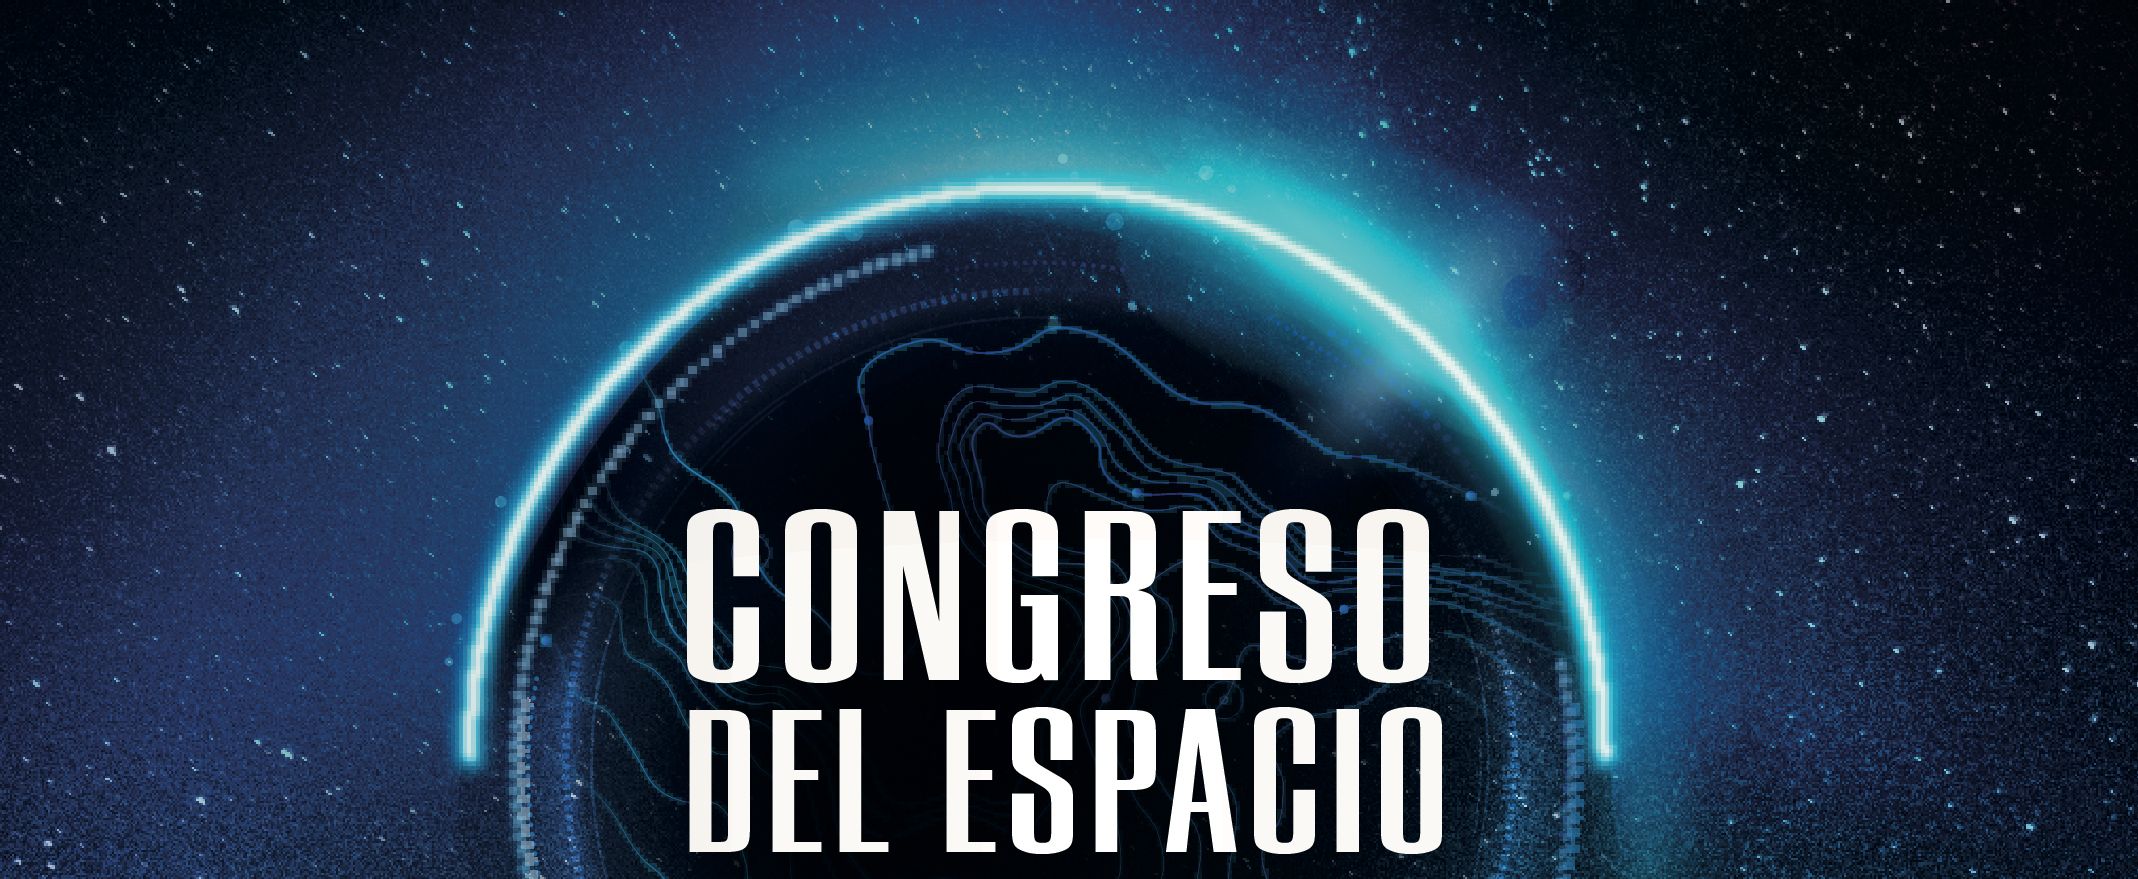 España, Congreso del Espacio